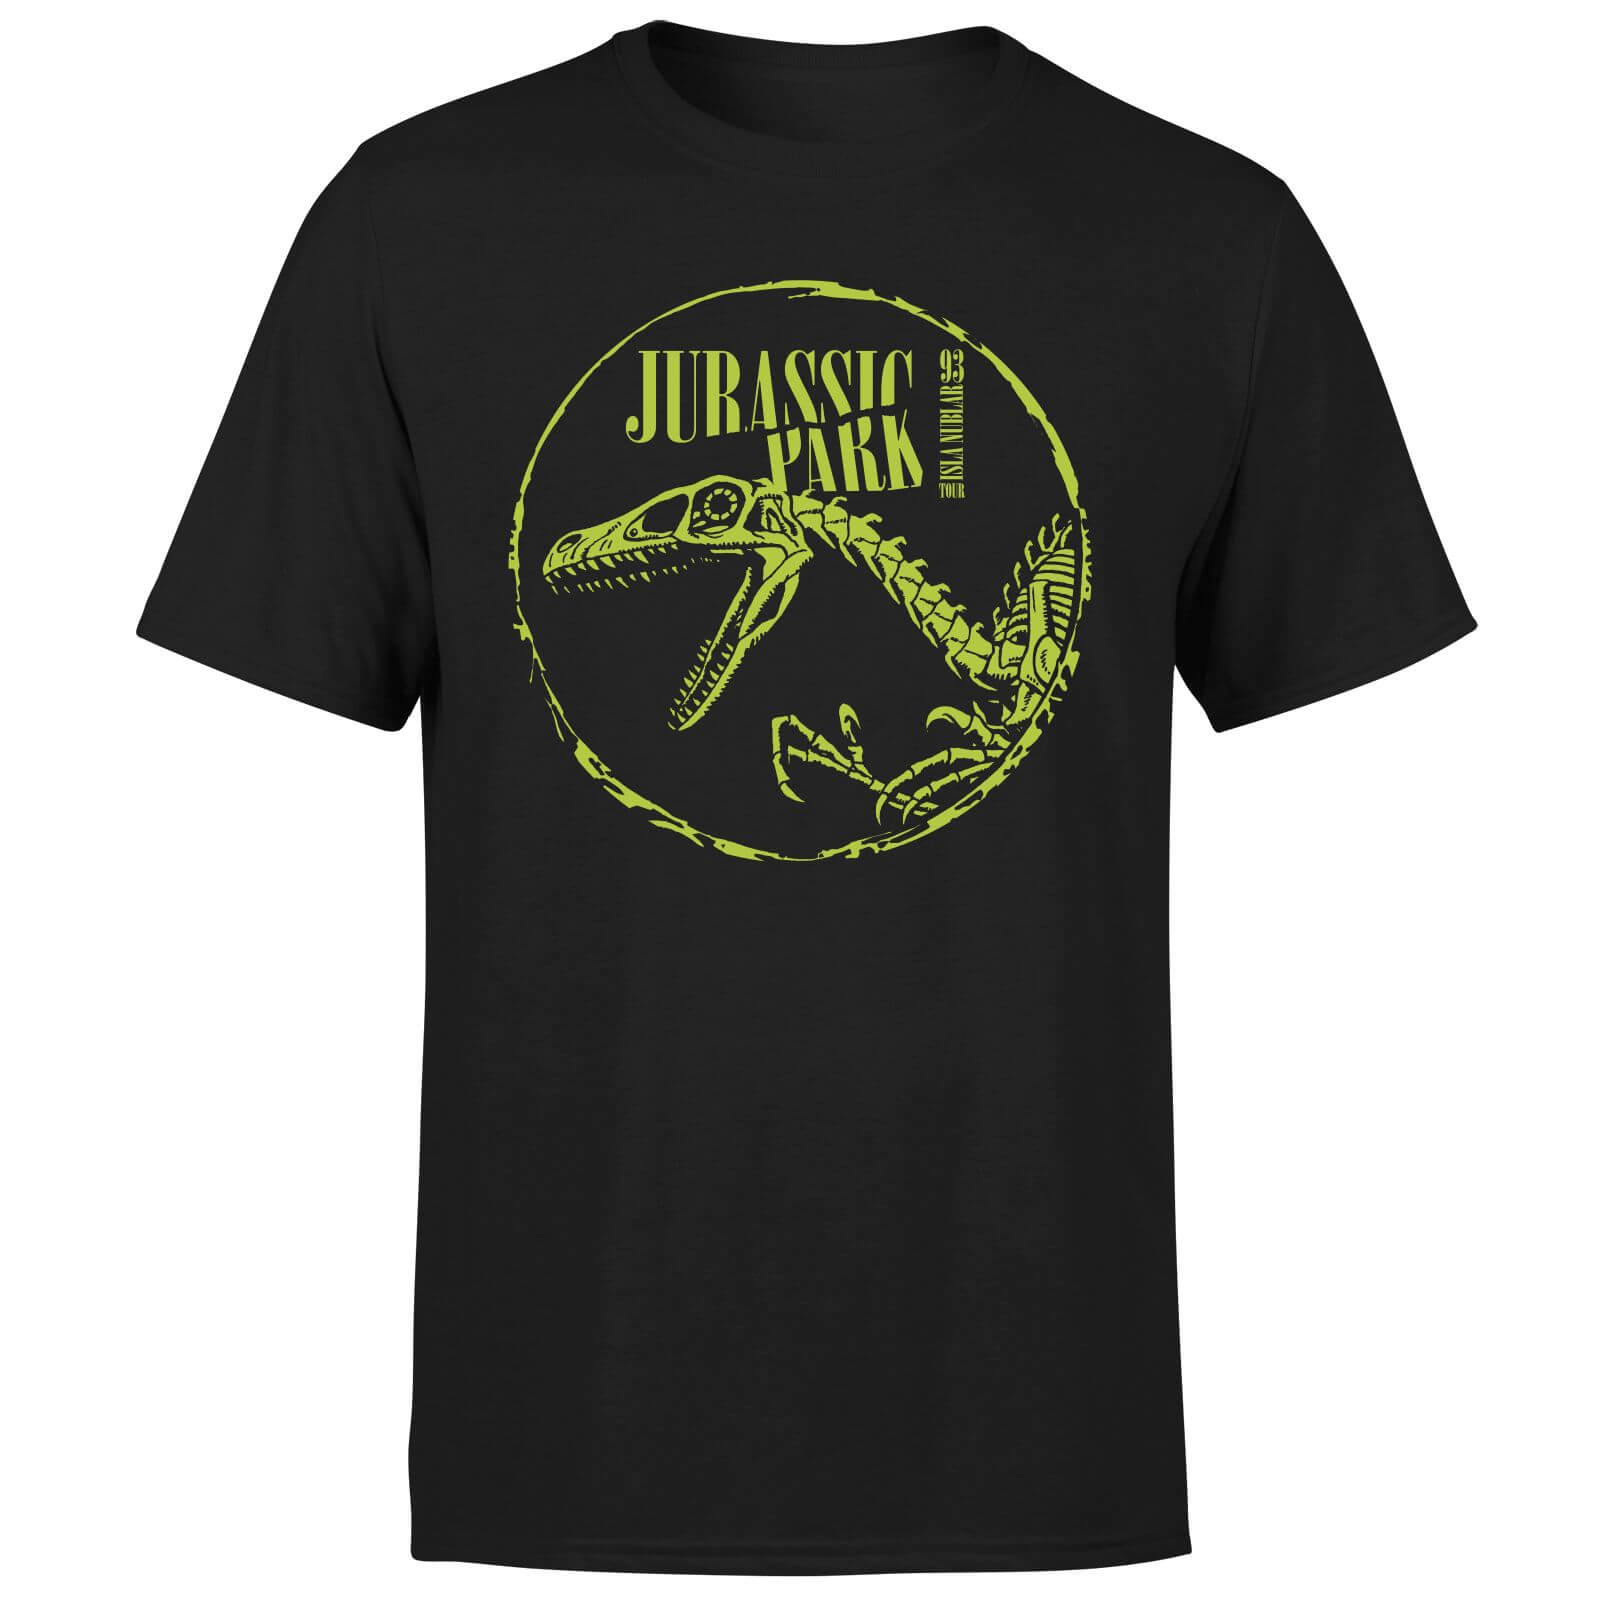 Jurassic Park Skell Unisex T-Shirt - Black - S